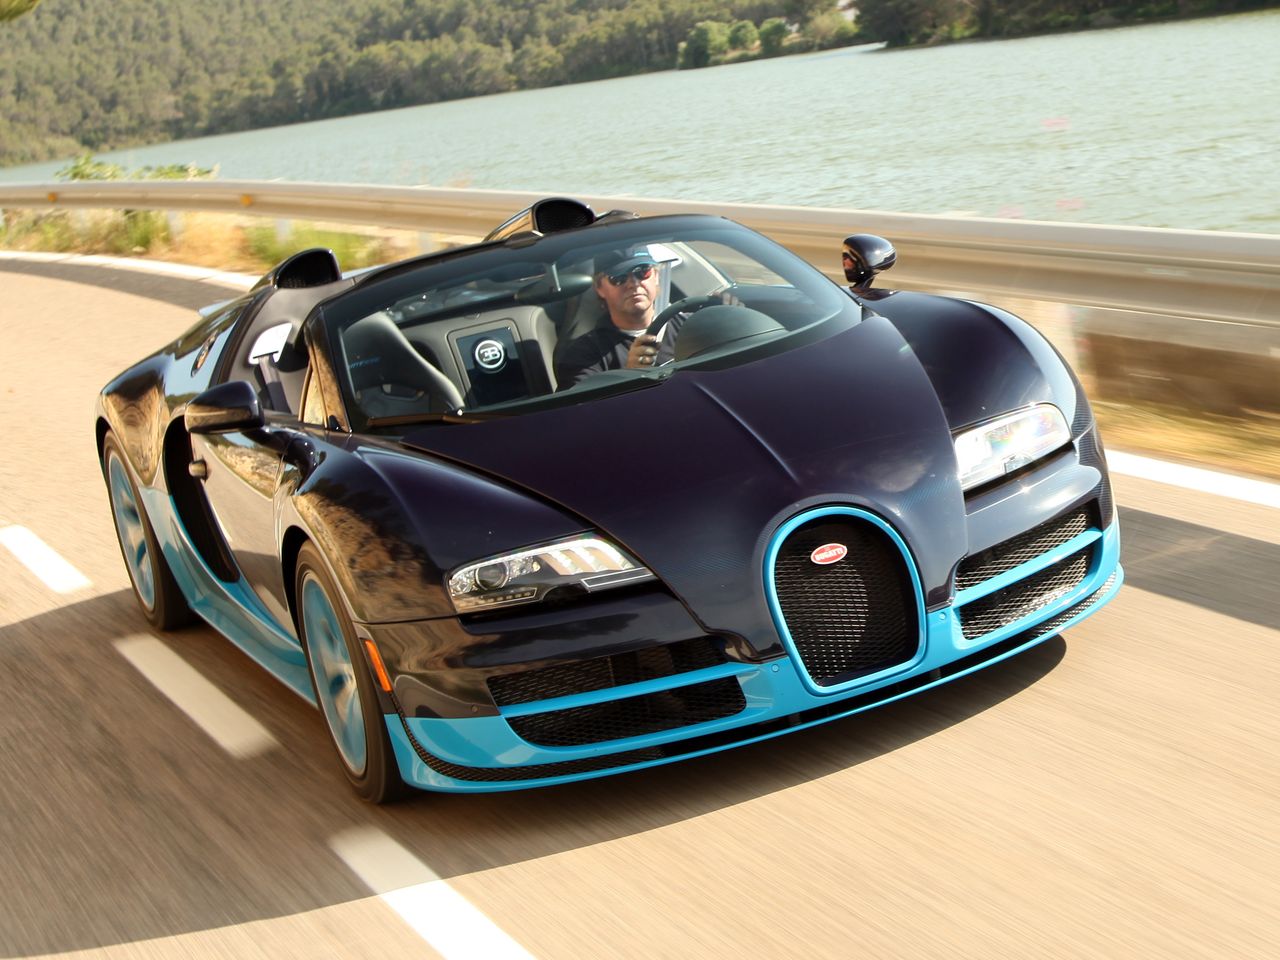 W 2012 roku Bugatti postanowiło dać prezent tym, którzy chcieli mieć i najszybszego Veyrona i targę. Właśnie takim miksem jest Grand Sport Vitesse. Łączy on mocarną jednostkę z Super Sporta z nadwoziem Grand Sporta z dodatkami aerodynamicznymi tego pierwszego.